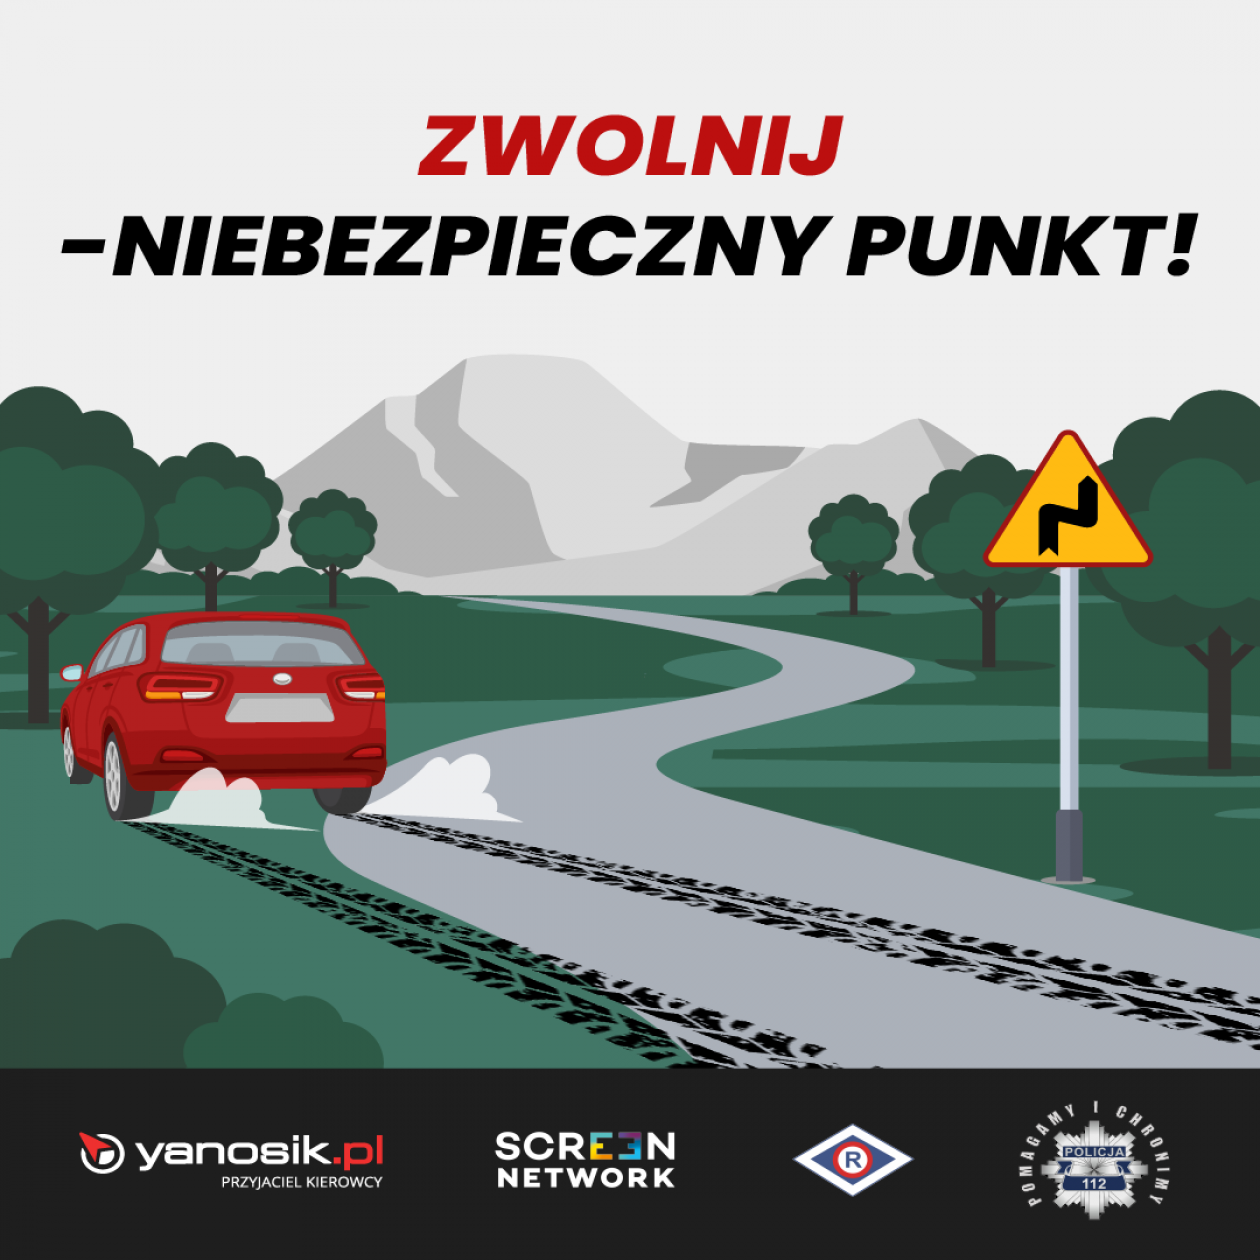 Yanosik ostrzega przed niebezpiecznymi punktami na drodze 